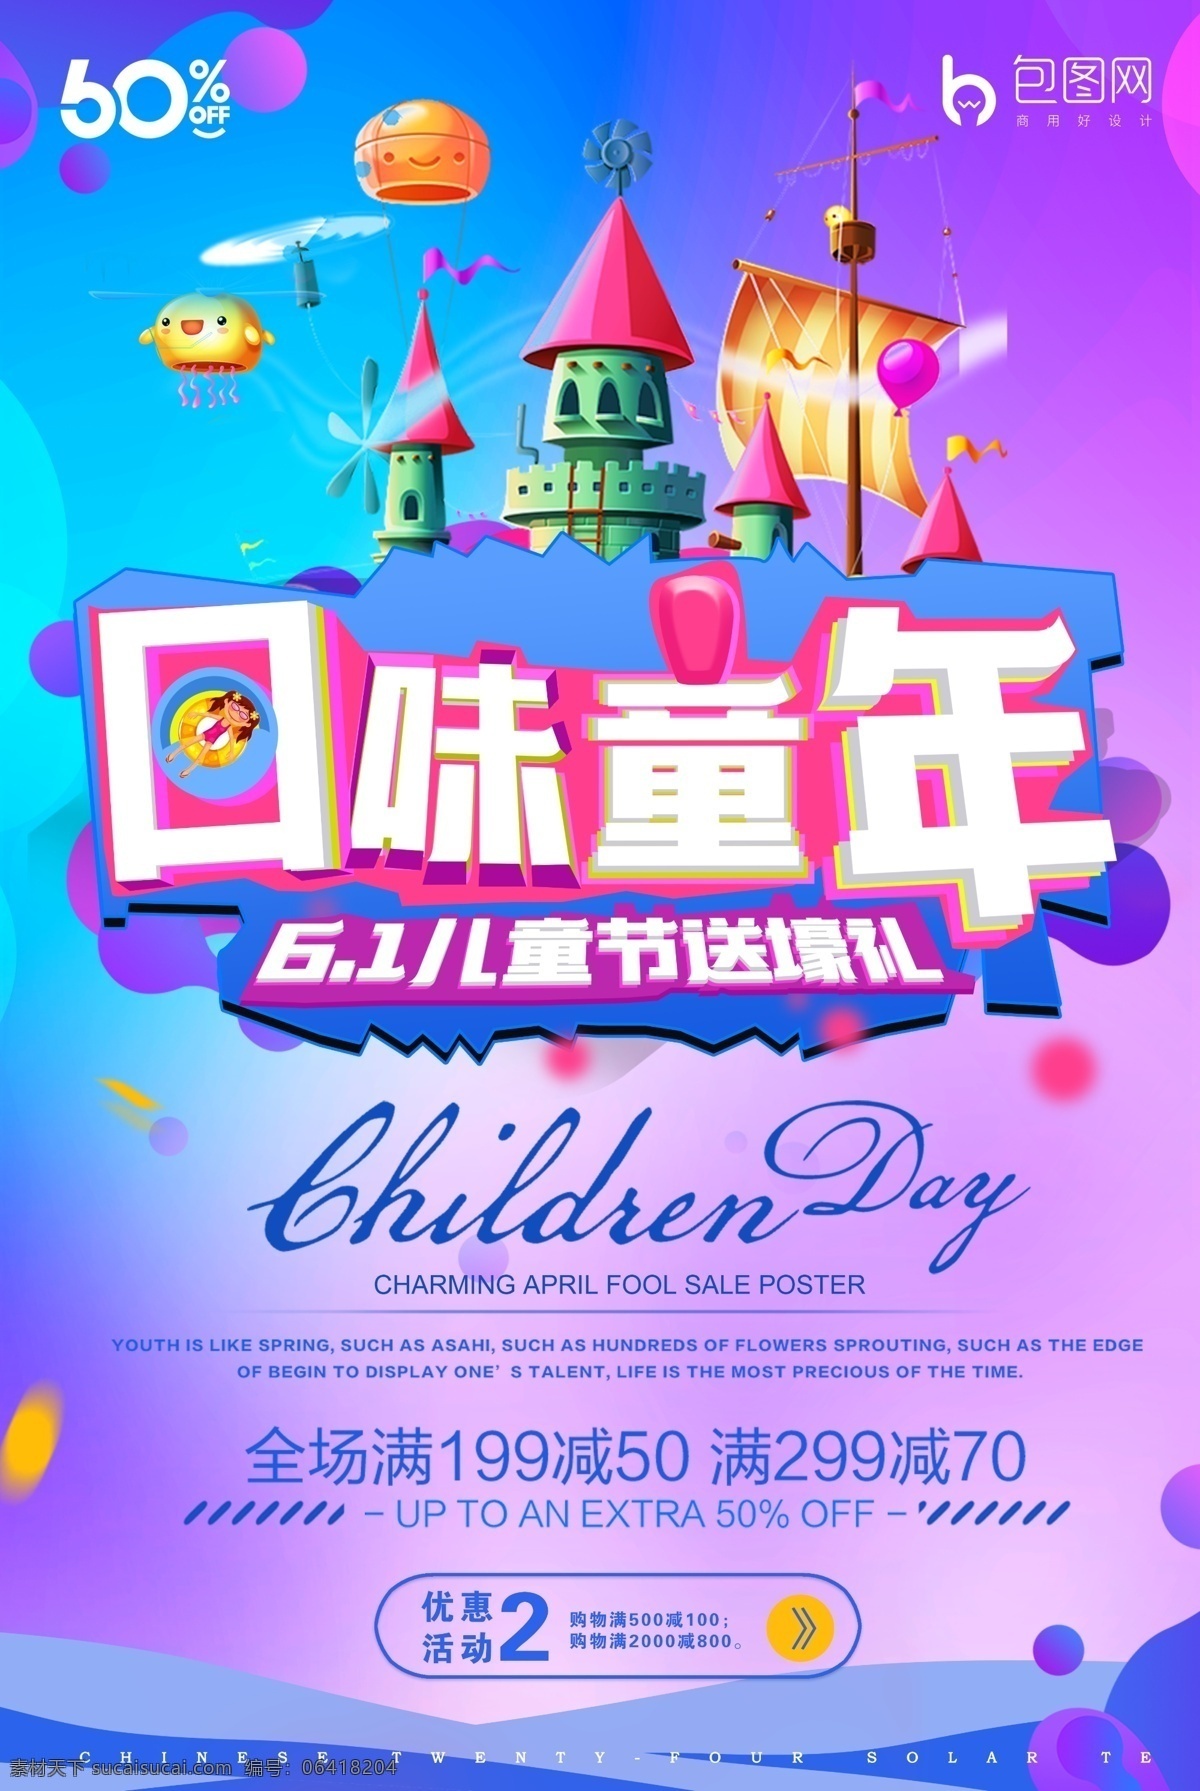 61 六一儿童节 海报招贴 宣传画 六月 国际 儿童节 儿童 节日 糖果 气球 剪影 剪纸 招贴 海报